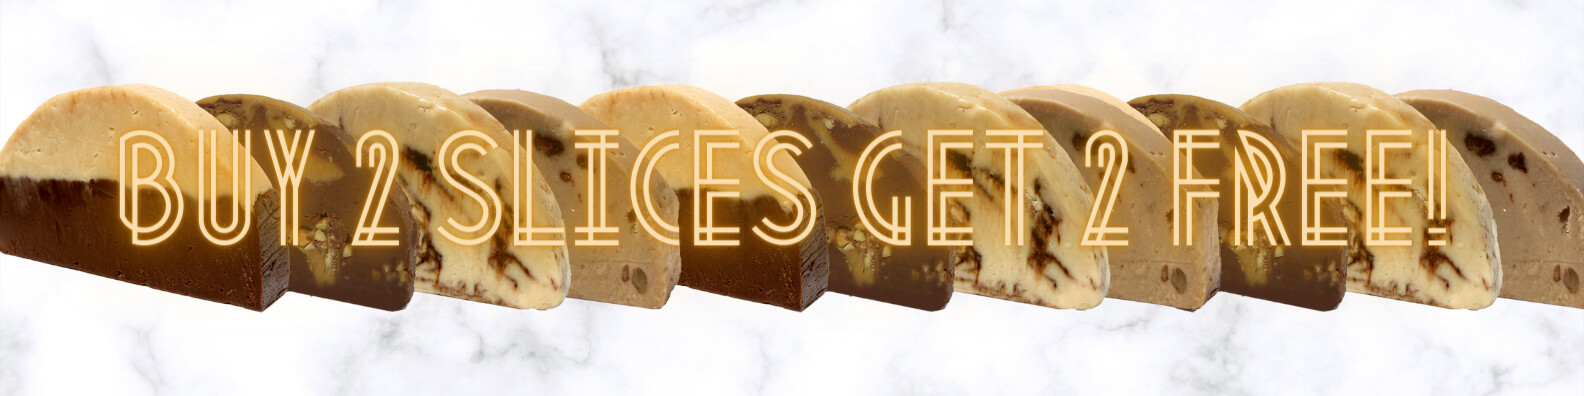 Fudge Special: Buy 2 slices get 2 free!